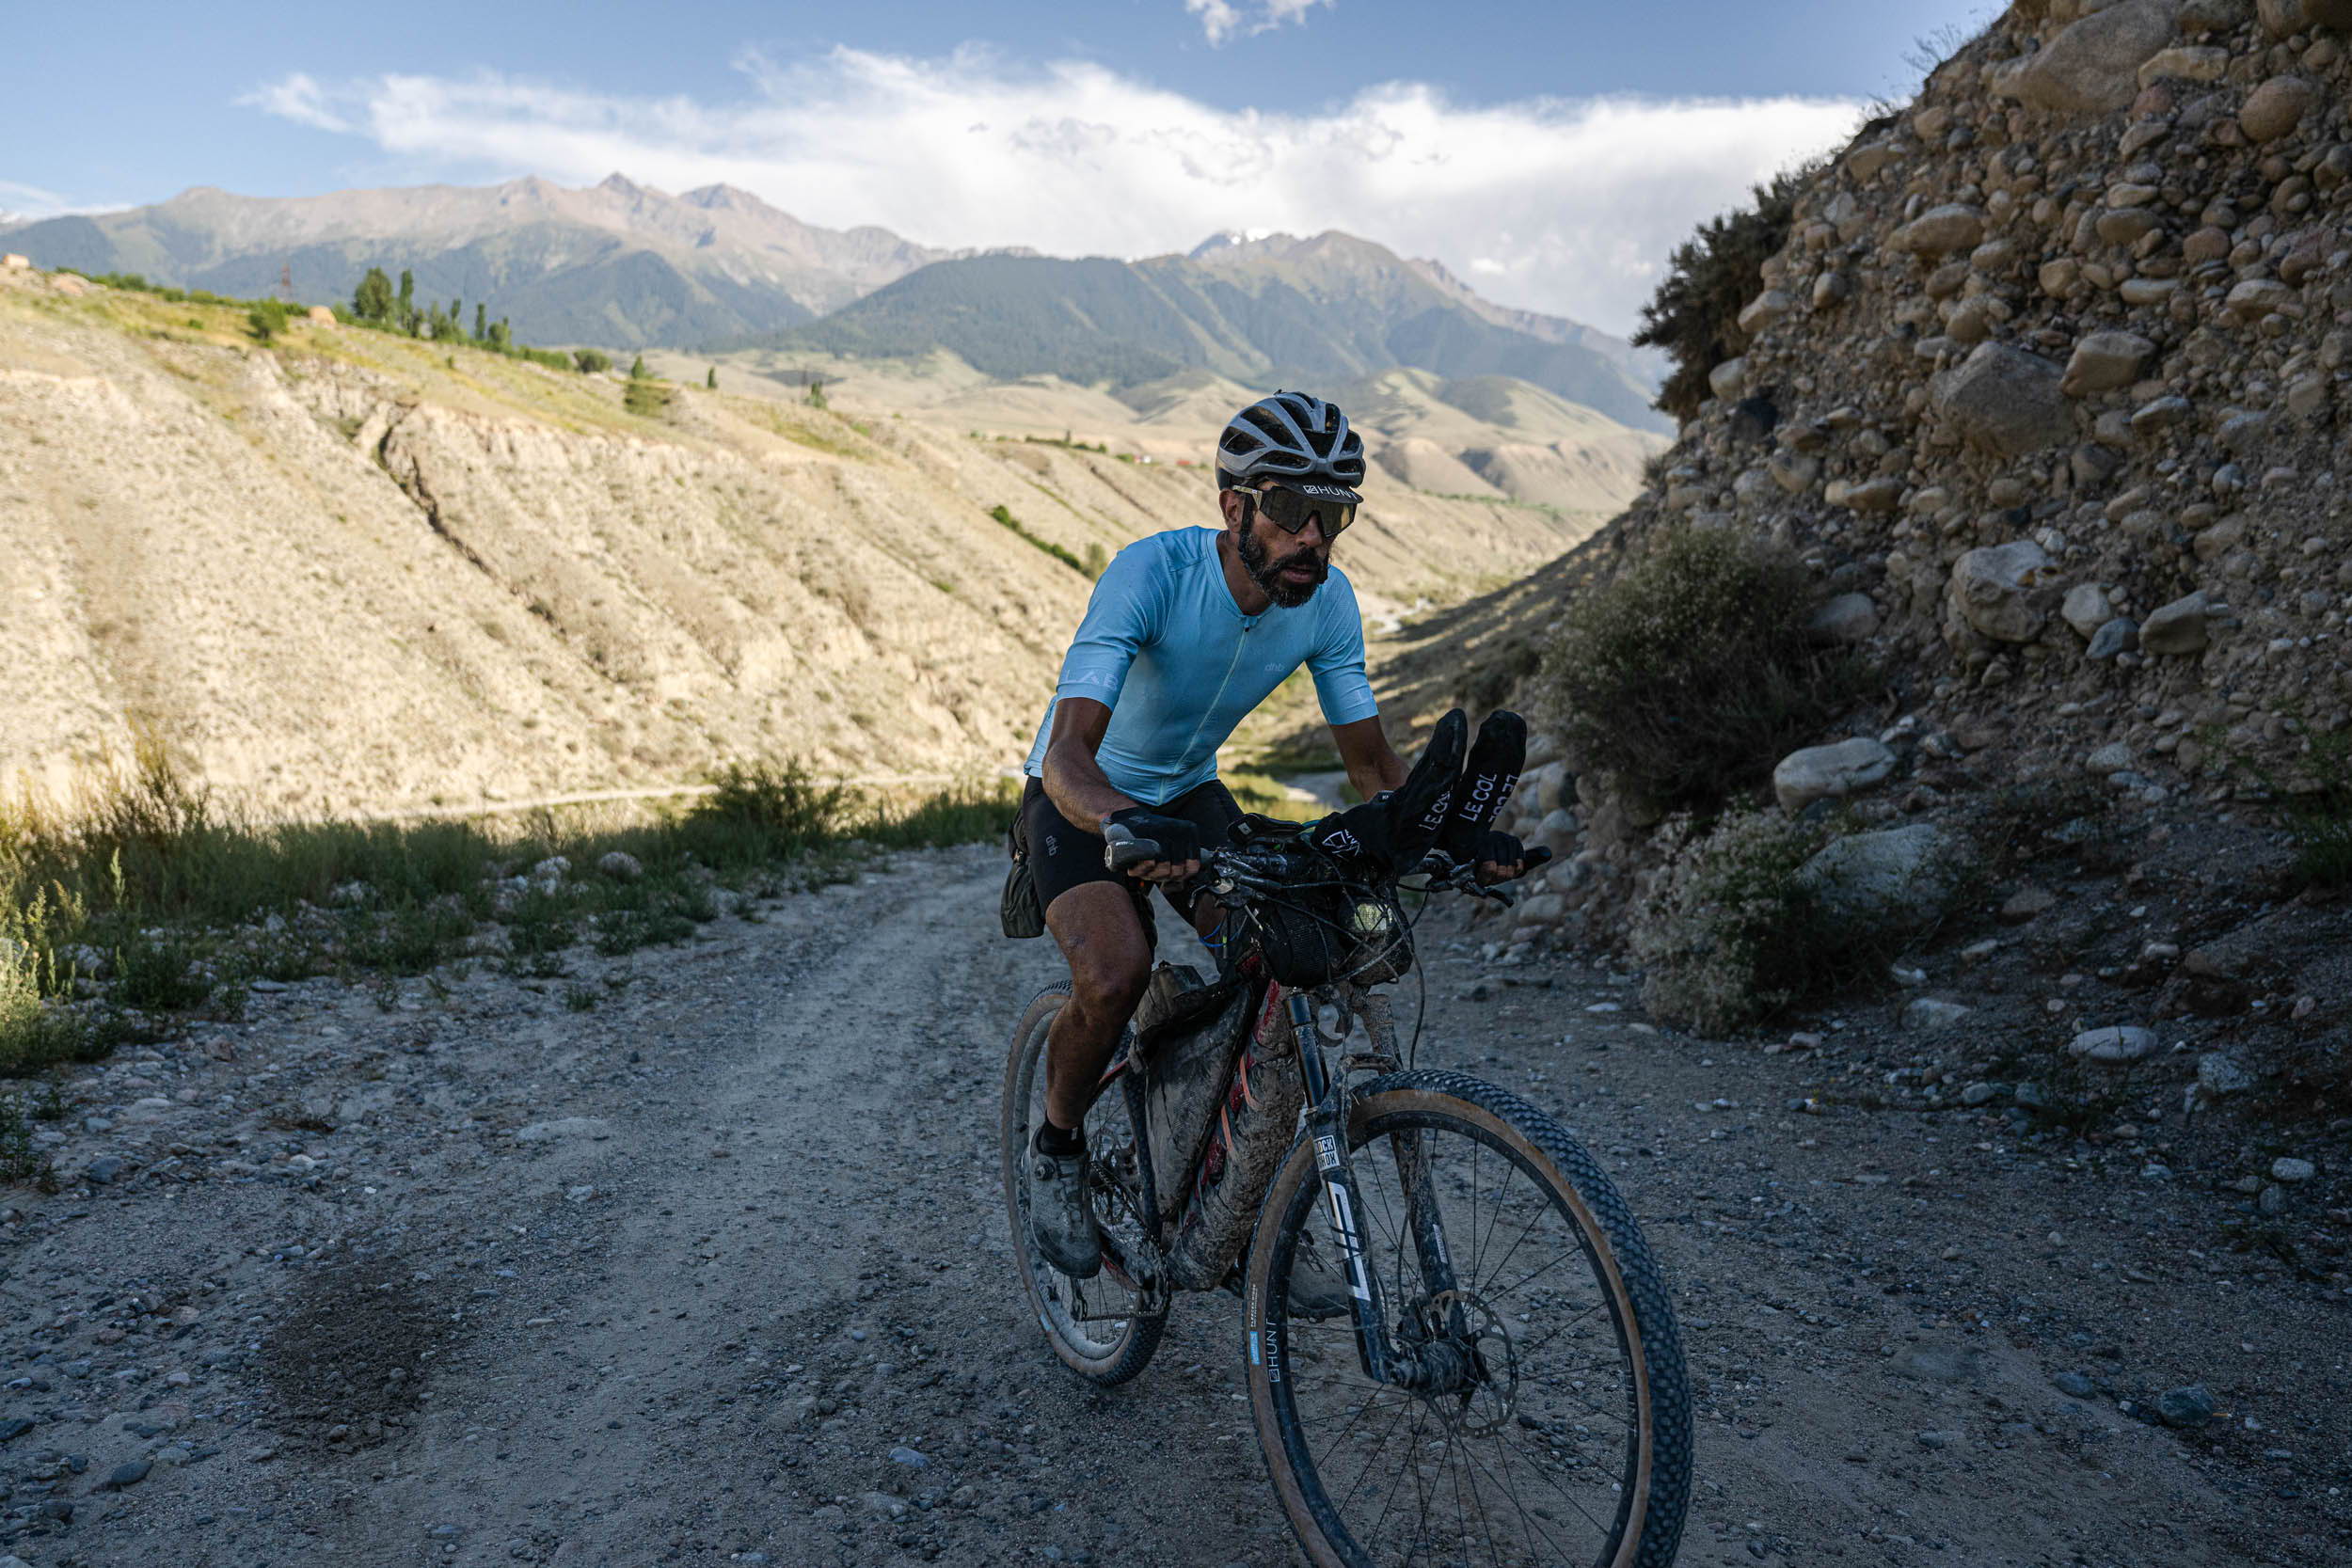 Sofiane Sehili riding in the mountains